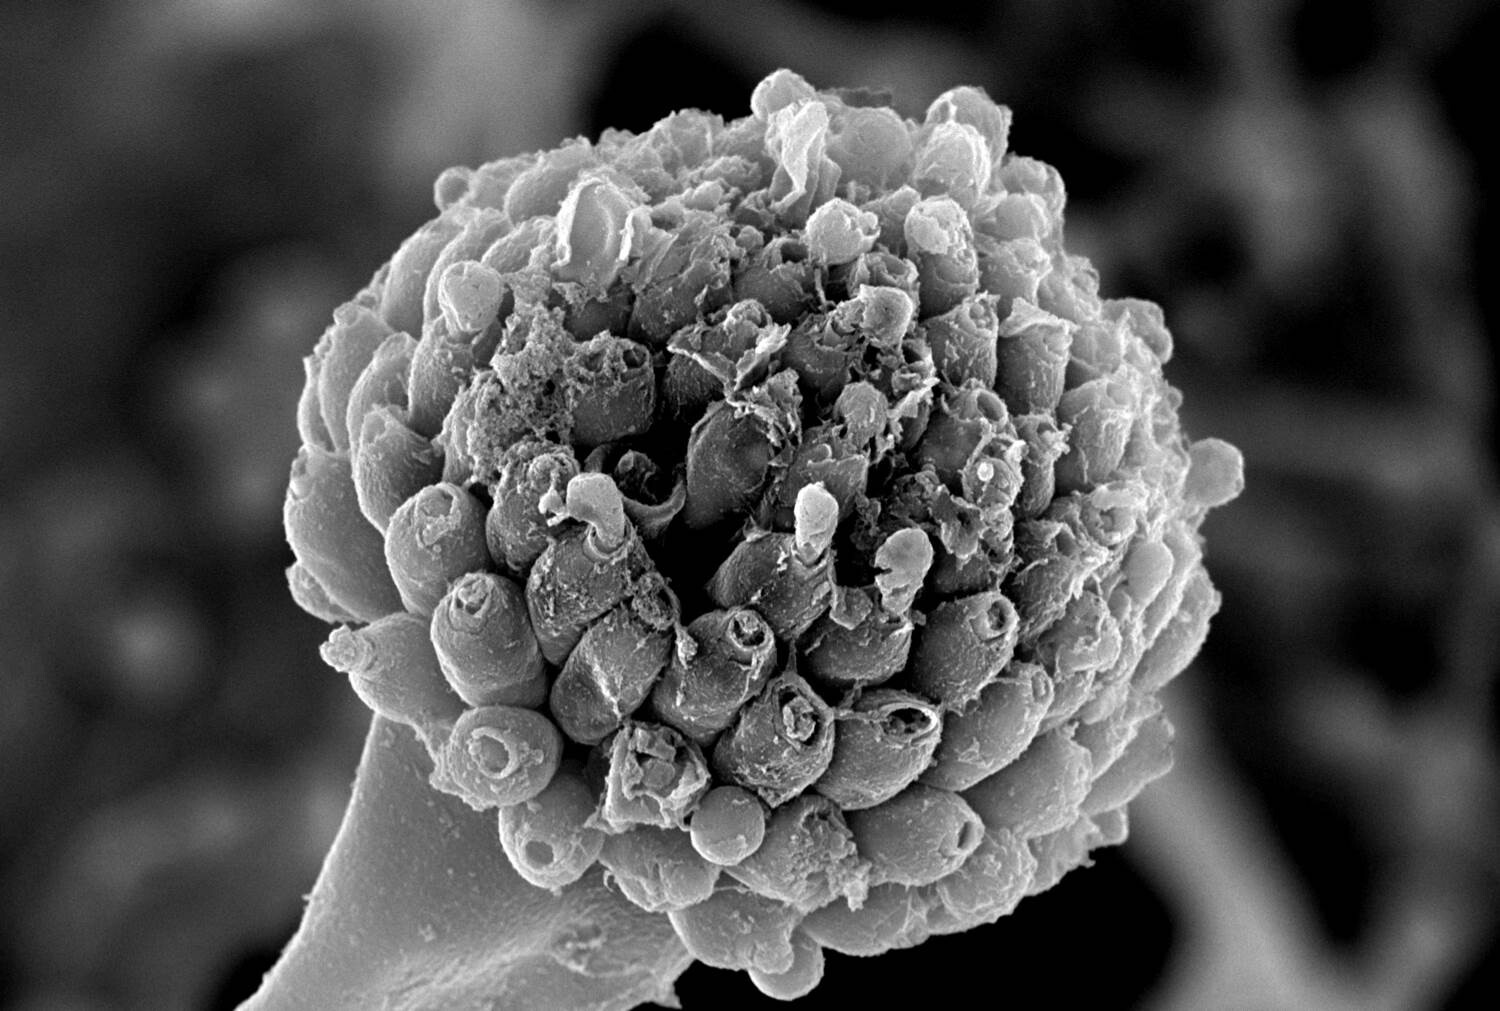 Die elektronenmikroskopische Aufnahme des Gießkannenschimmels (Aspergillus) zeigt deutlich, dass nach Behandlung mit dem körpereigenen Fungizid der Sporenträger des Pilzes zerstört ist. © Kyaw Zaw Hein